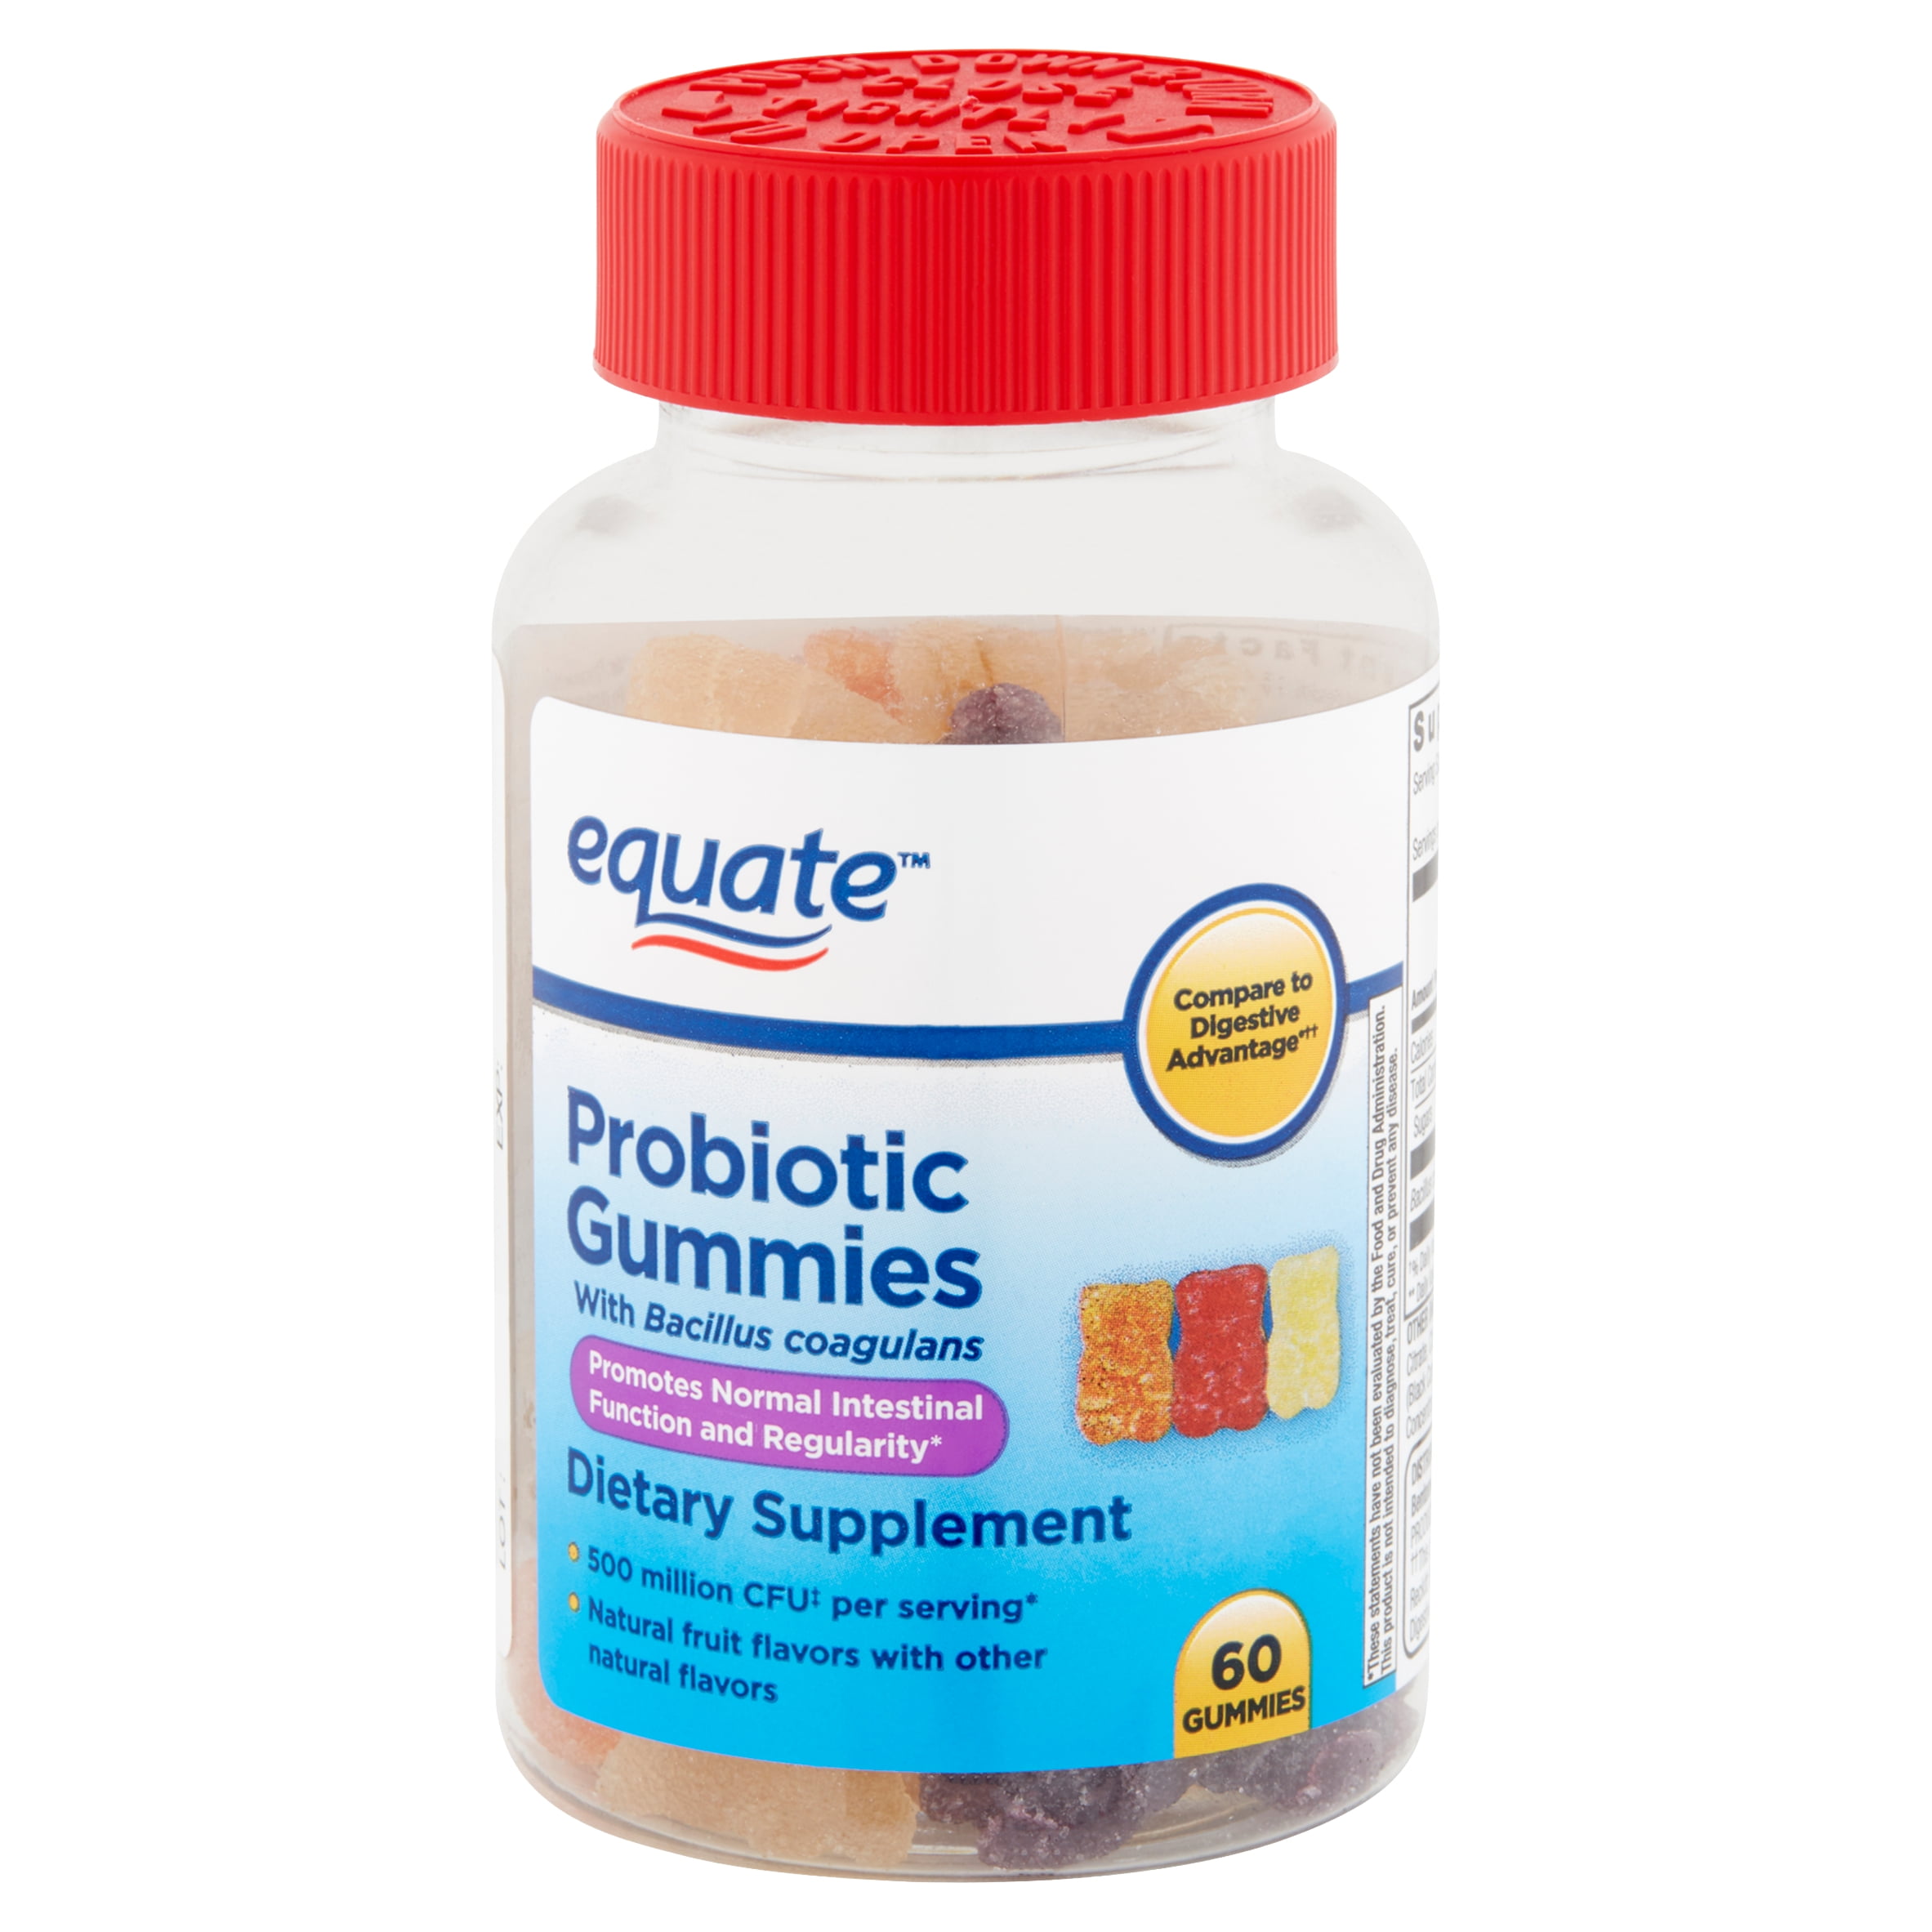 Equate Probiotic Gummies, 60 count - Walmart.com - Walmart.com